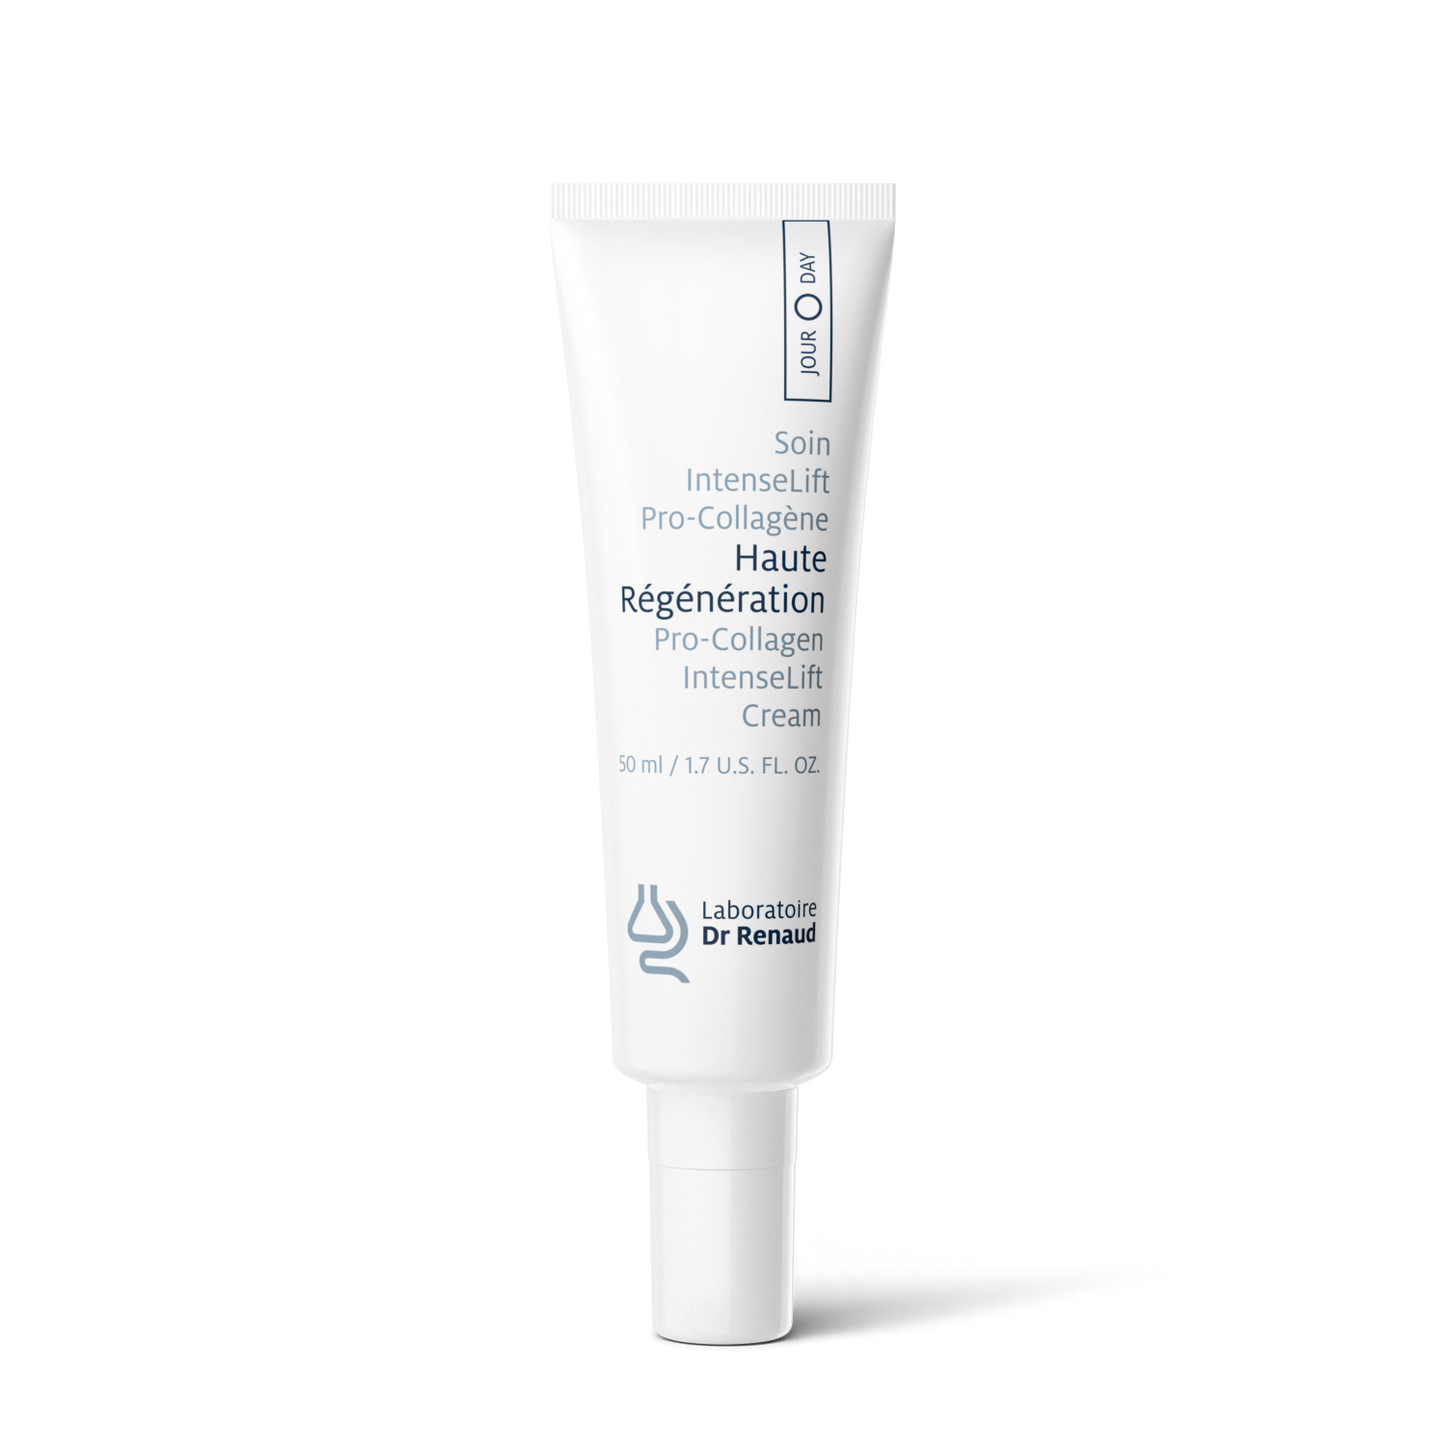 Dr. Renaud - Haute Regeneration Pro-Collagen Intense Lift Cream